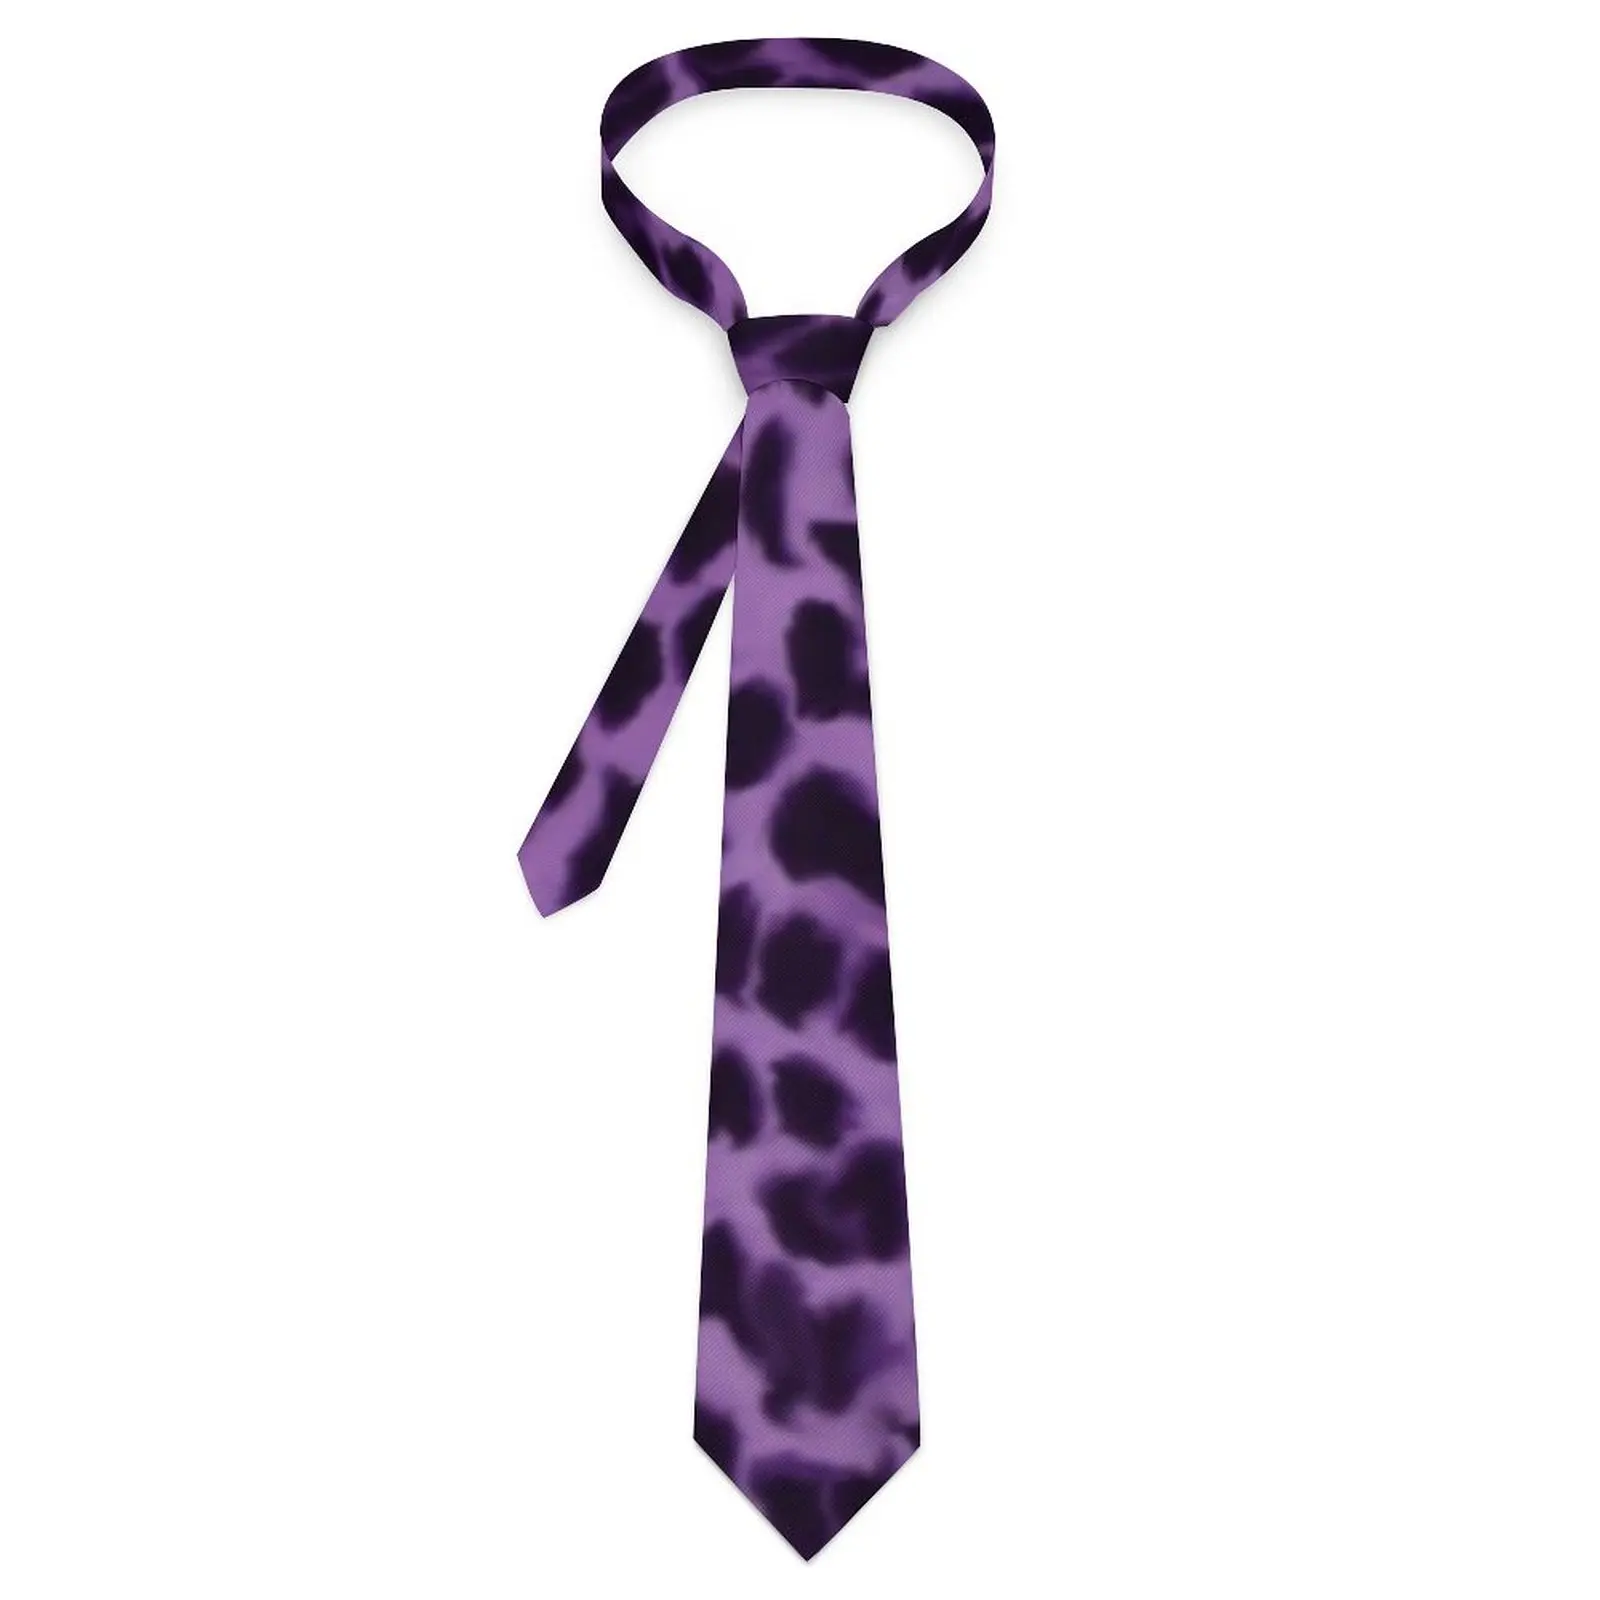 

Мужской галстук фиолетовый Леопардовый шейный галстук с животным принтом Классический Повседневный галстук для воротника дизайнерская повседневная одежда отличное качество